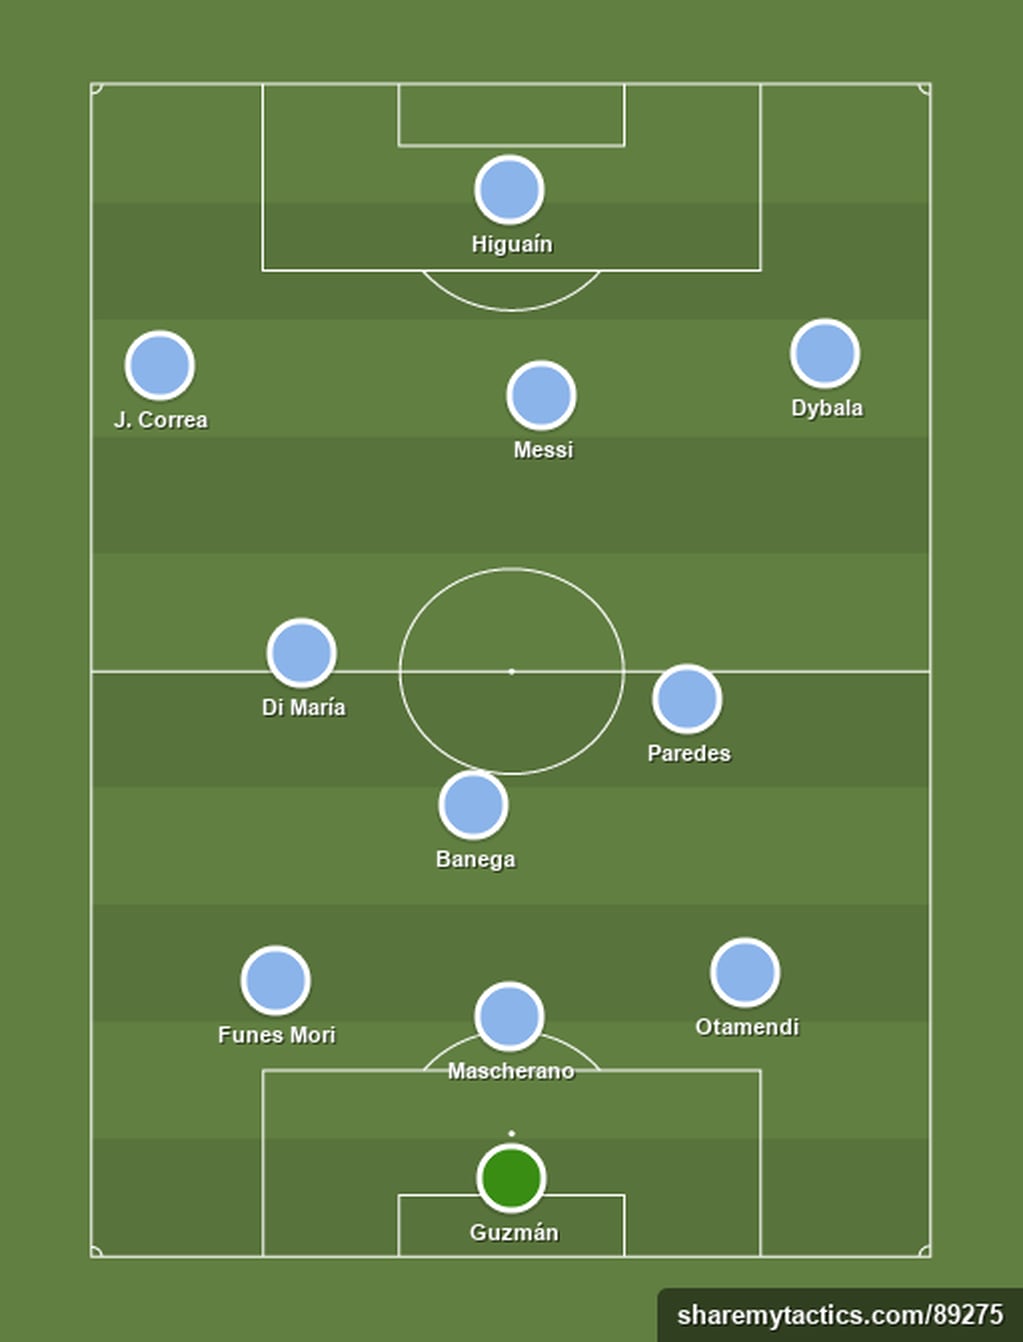 La Argentina de Sampaoli - Football tactics and formations